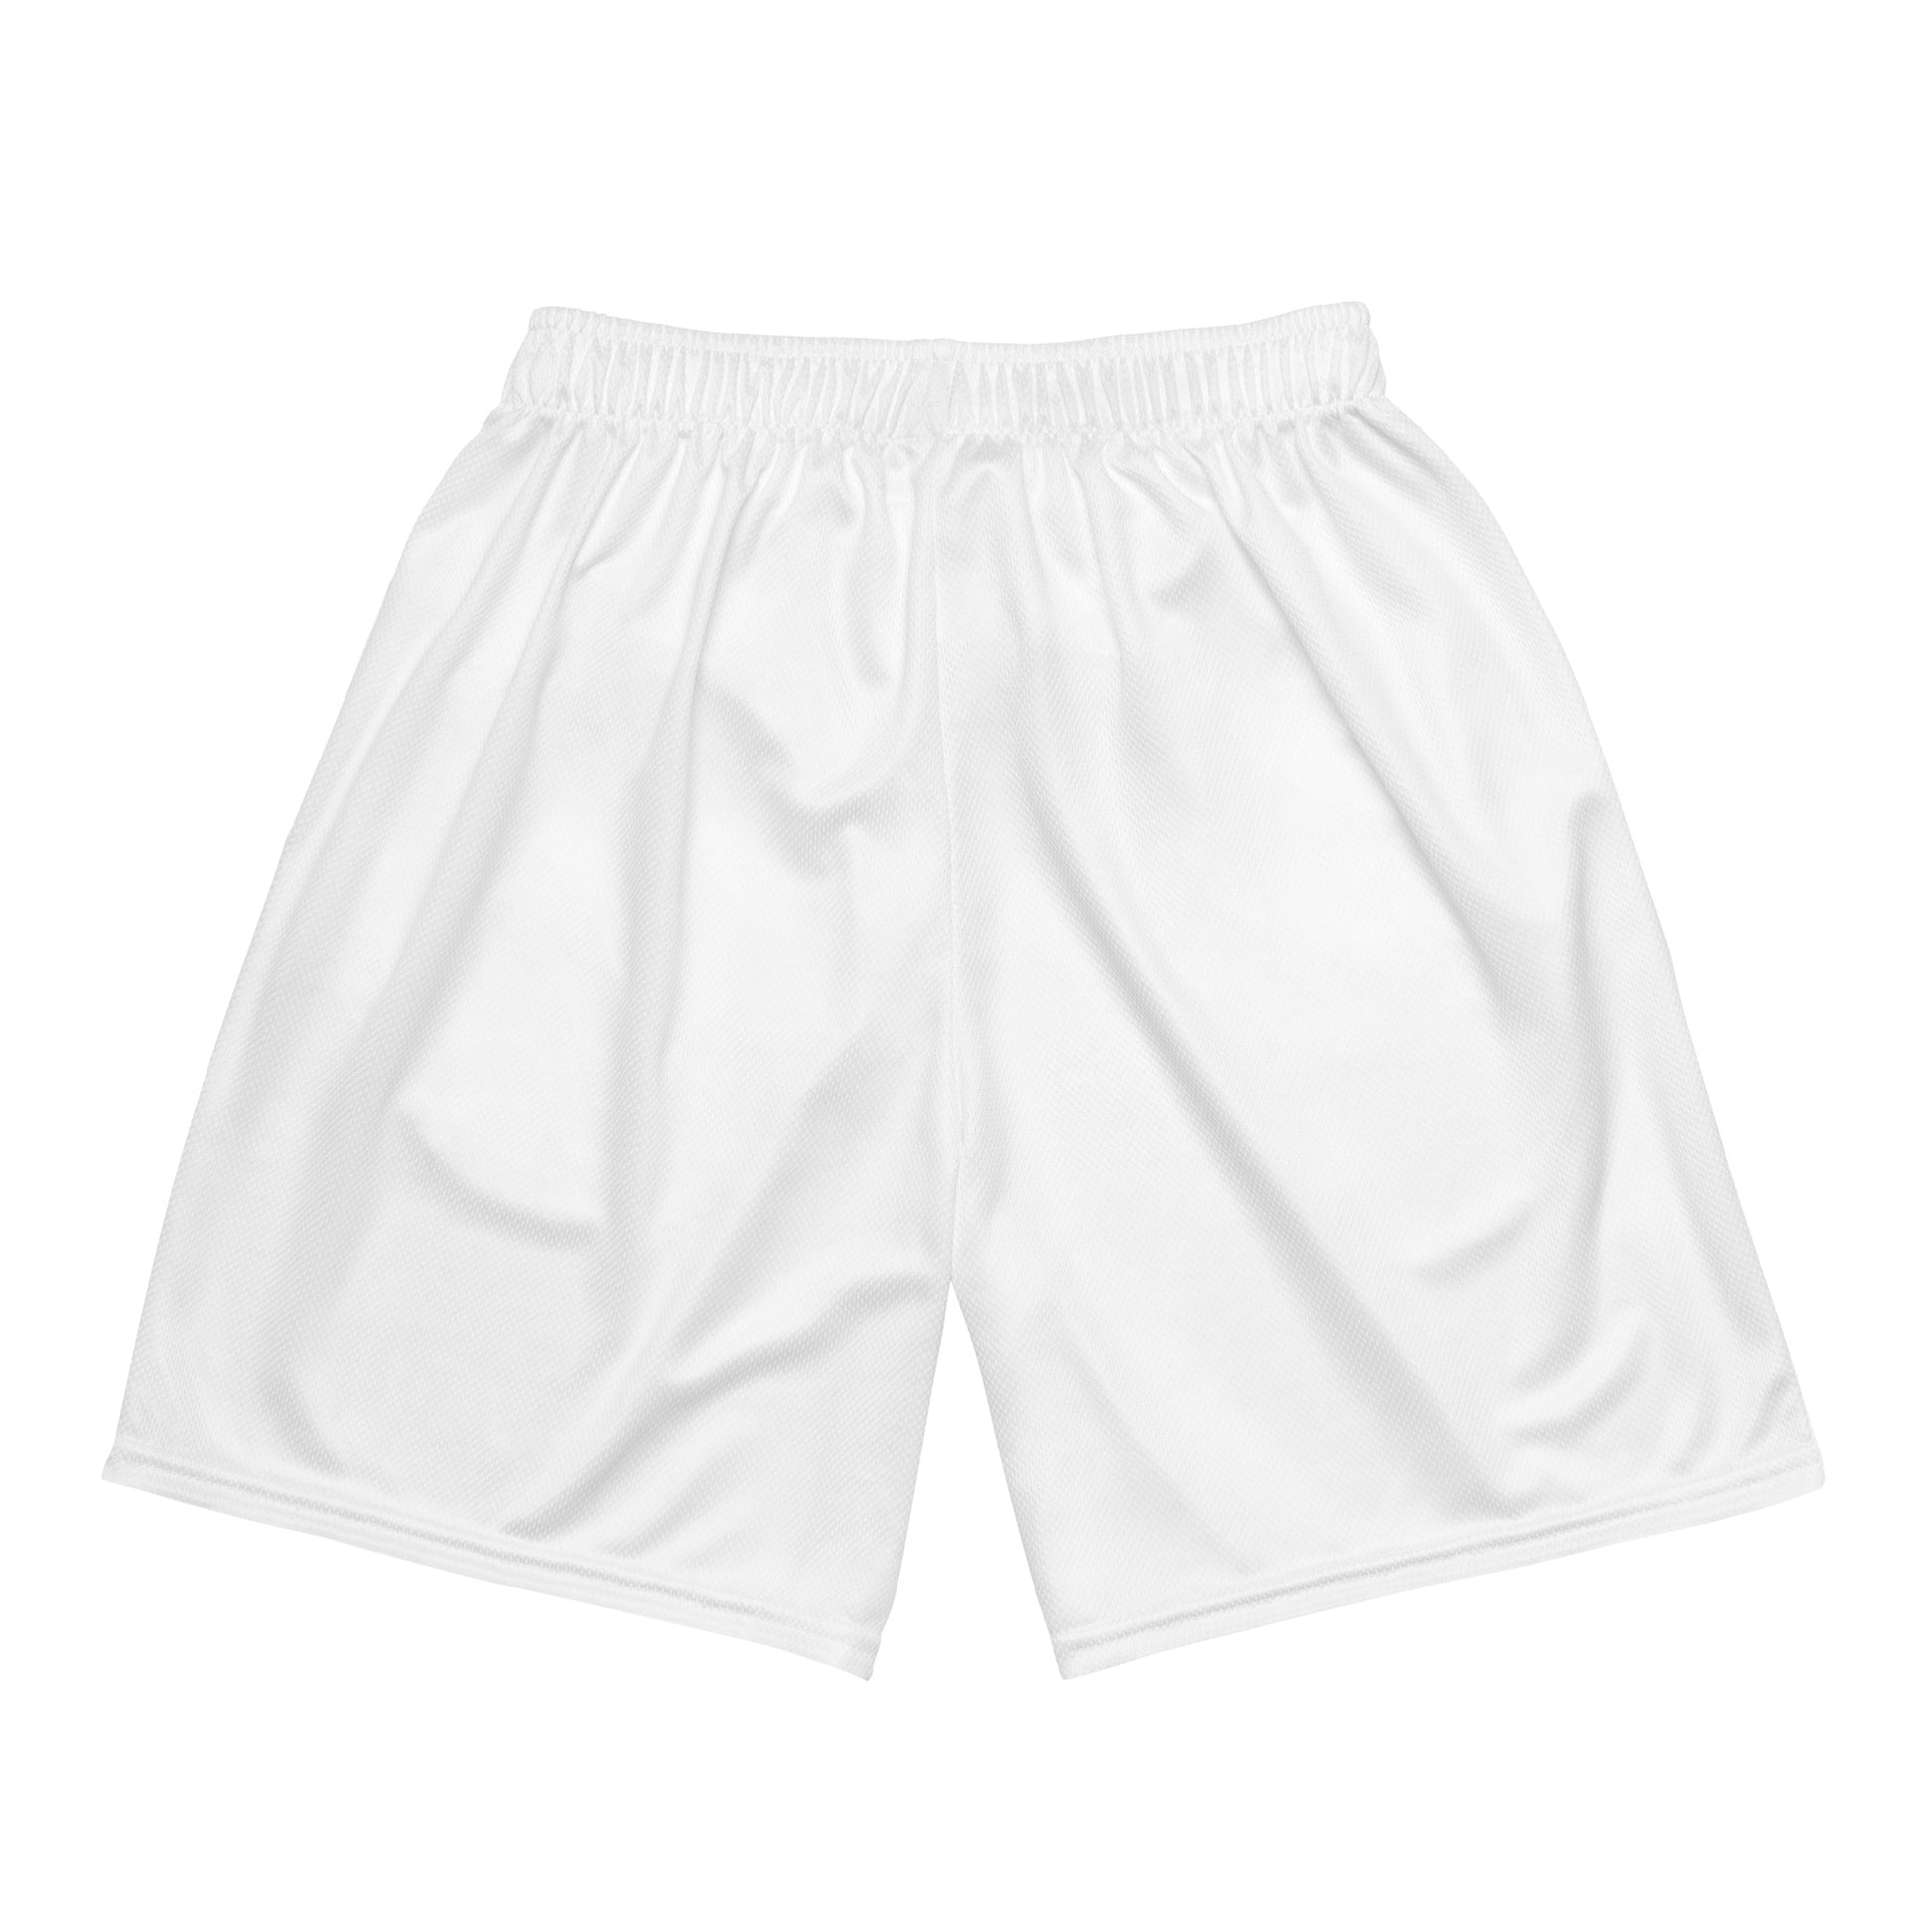 White mesh shorts